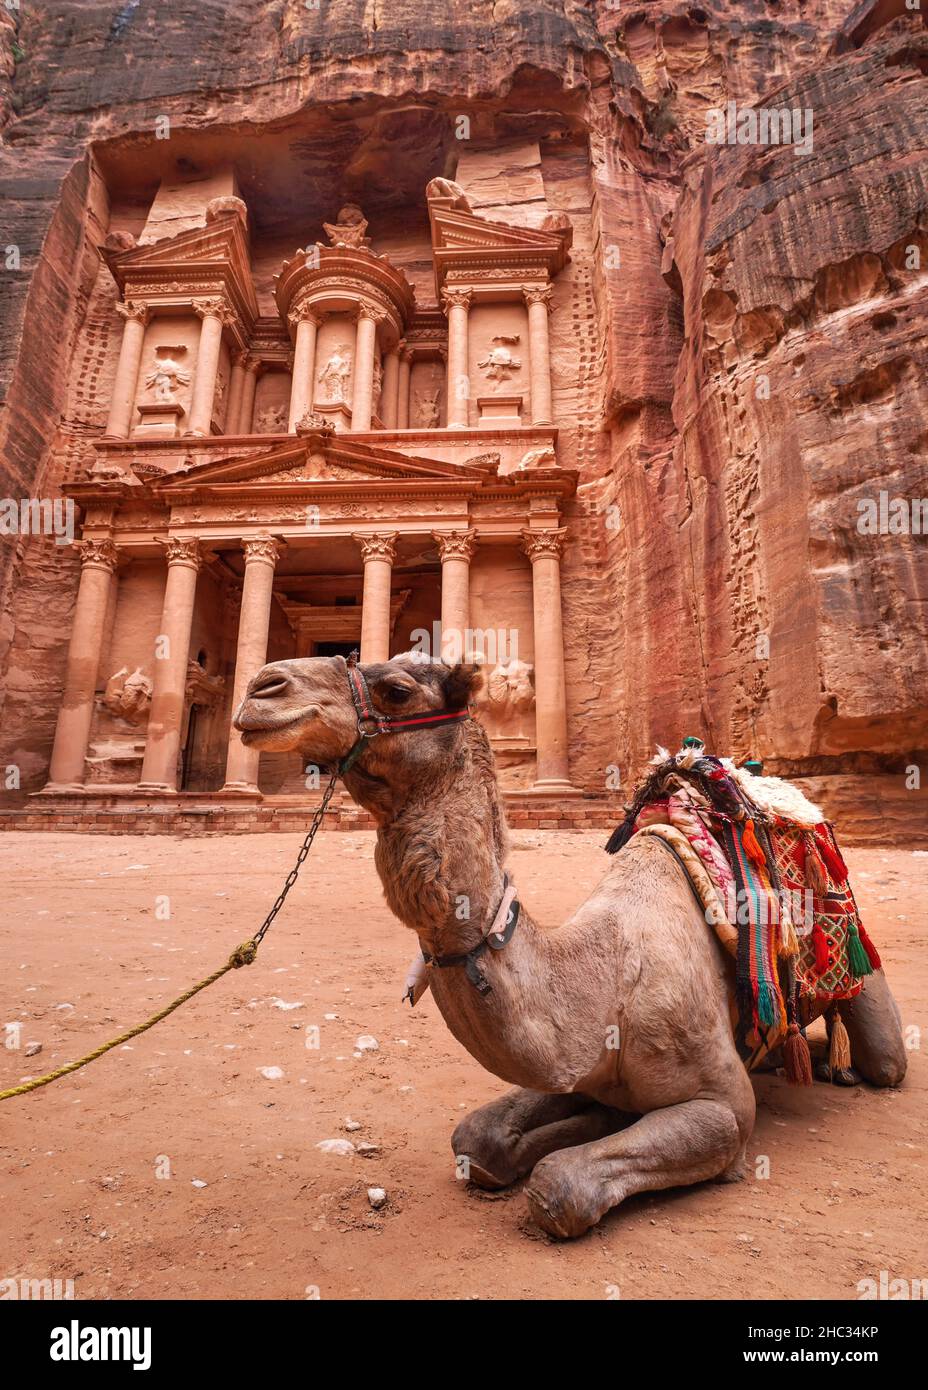 Chameau se reposant devant le temple principal (Al-Khazneh - Trésor) à Petra, en Jordanie.Les animaux sont utilisés pour les touristes Banque D'Images